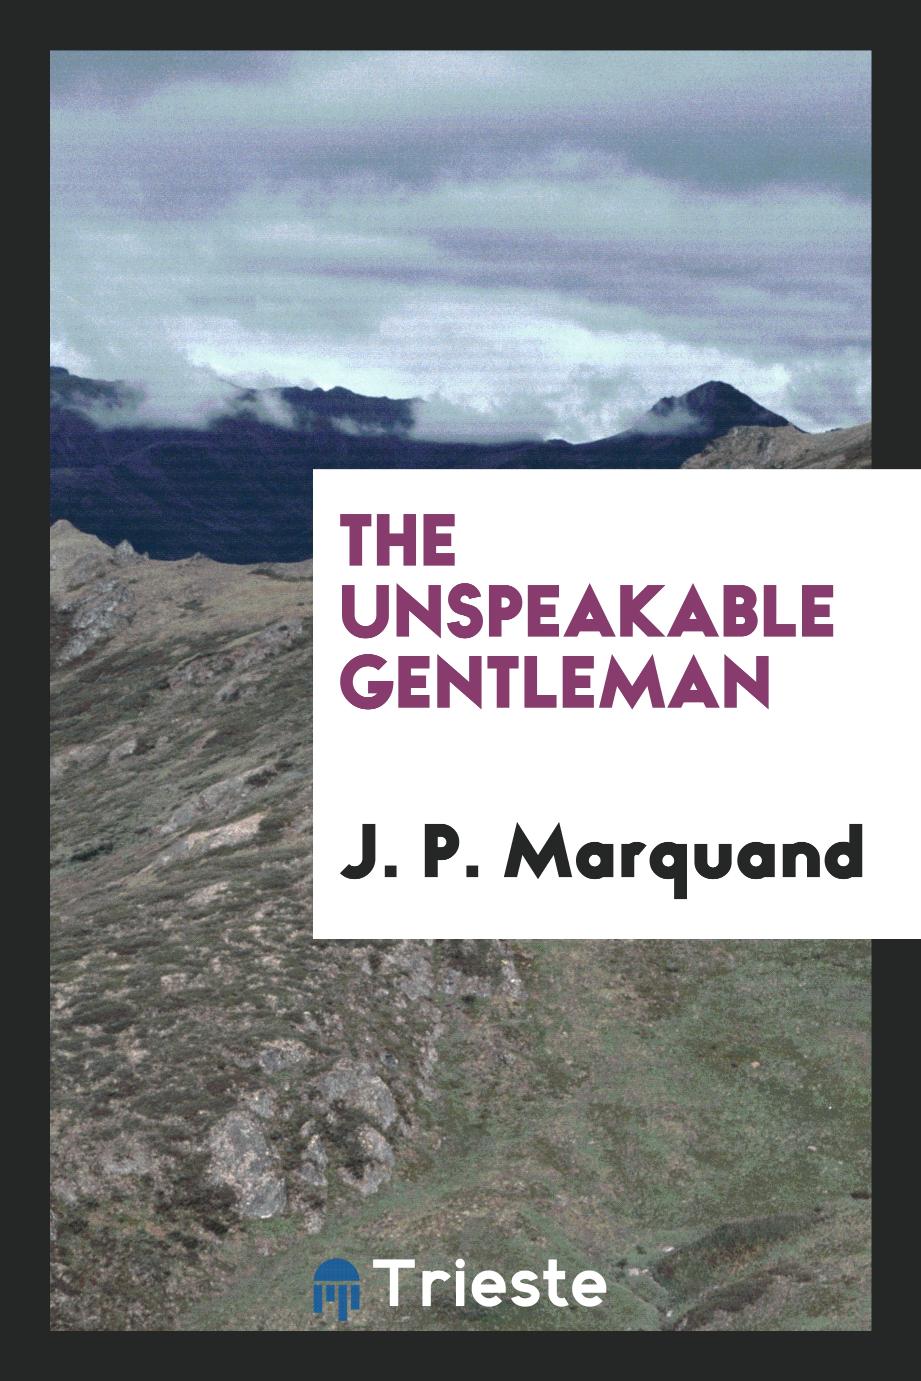 The unspeakable gentleman